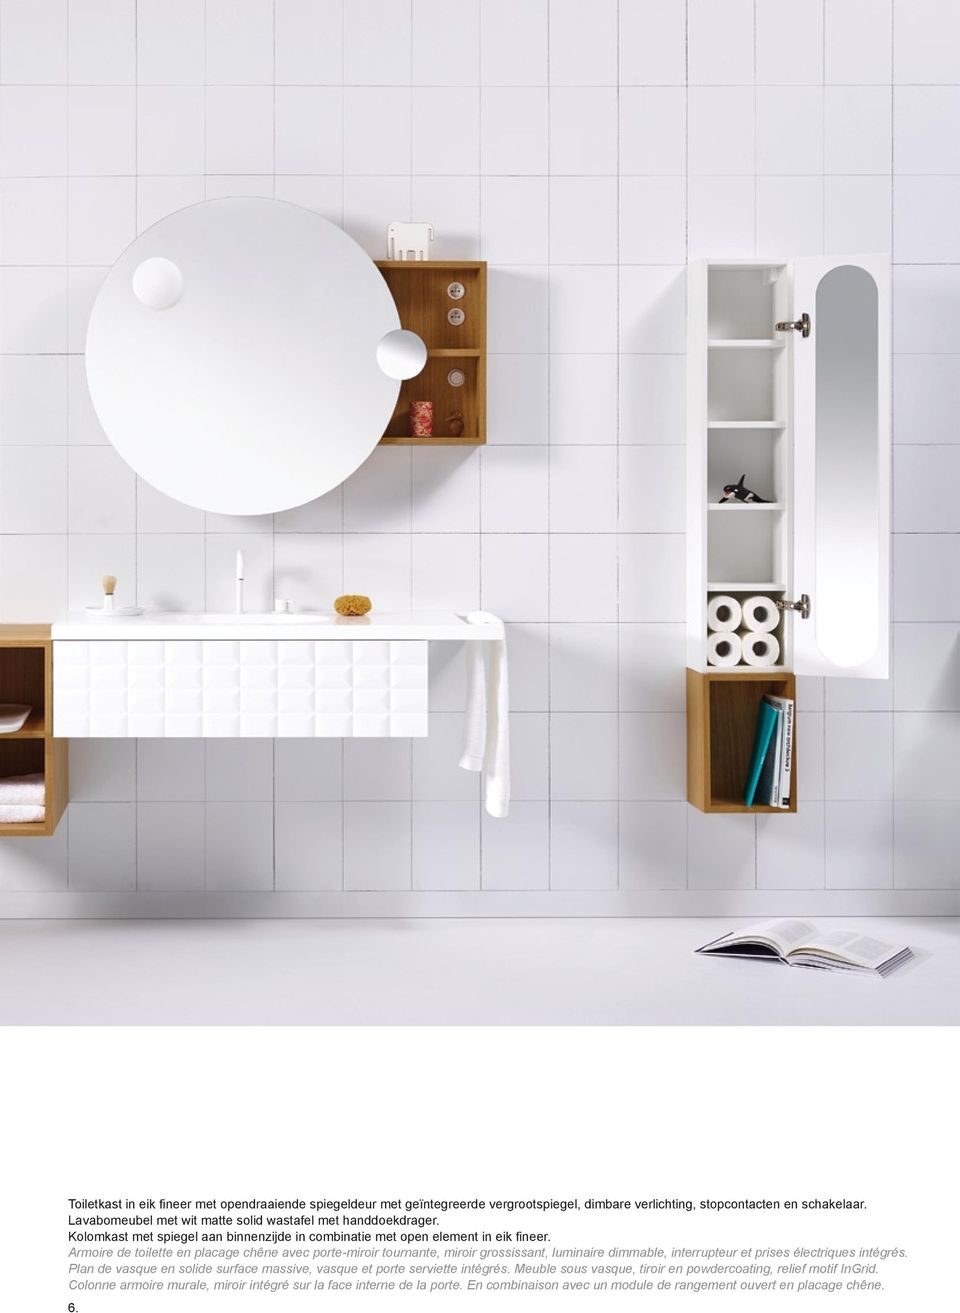 Armoire de toilette en placage chêne avec porte-miroir tournante, miroir grossissant, luminaire dimmable, interrupteur et prises électriques intégrés.